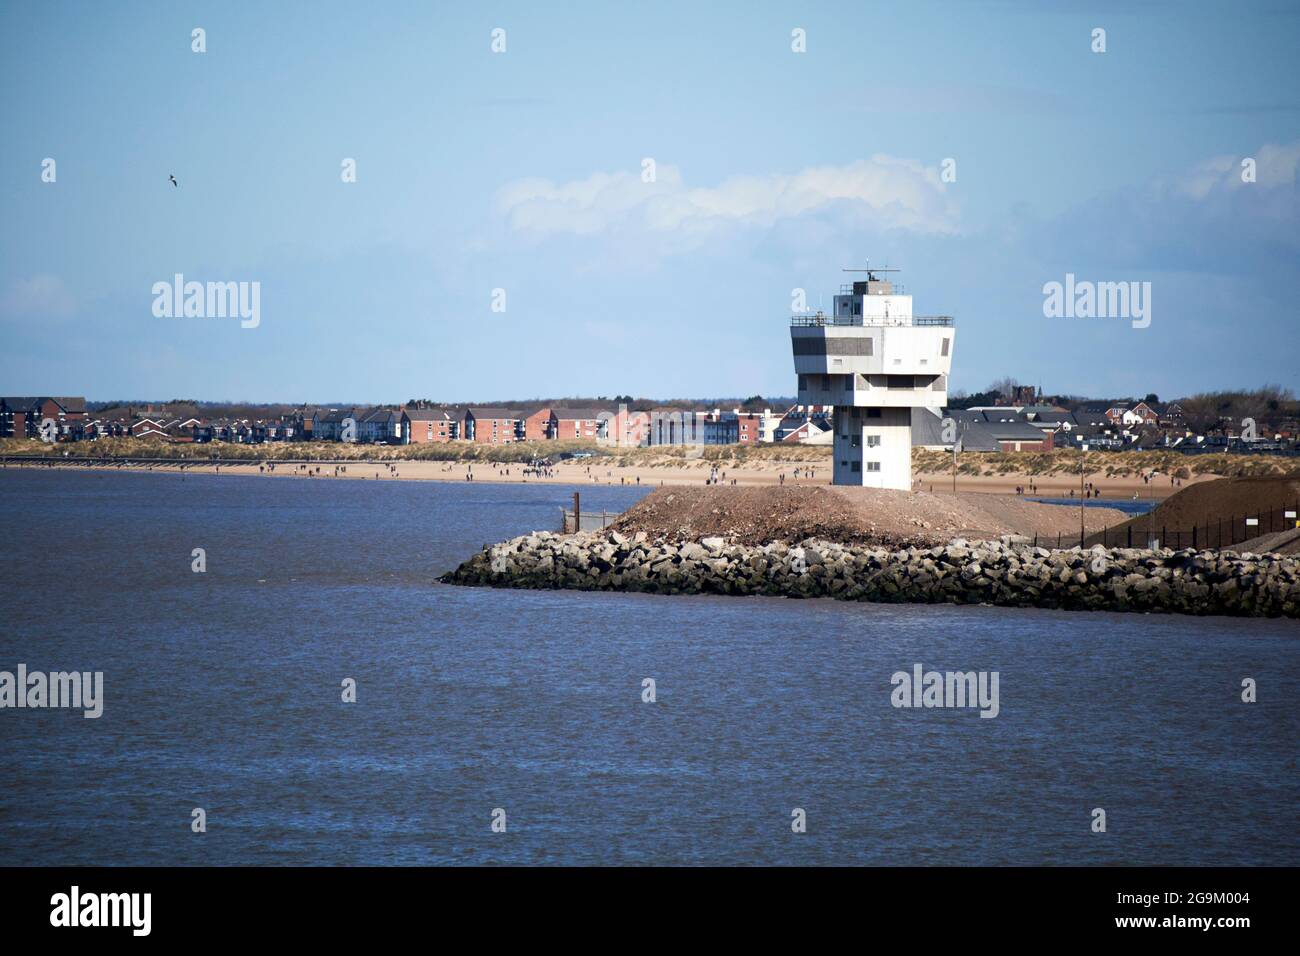 Derelict Seaforth radar torre sul fiume mersey ingresso alla zona del porto di liverpool con la spiaggia di crosby sullo sfondo inghilterra regno unito Foto Stock